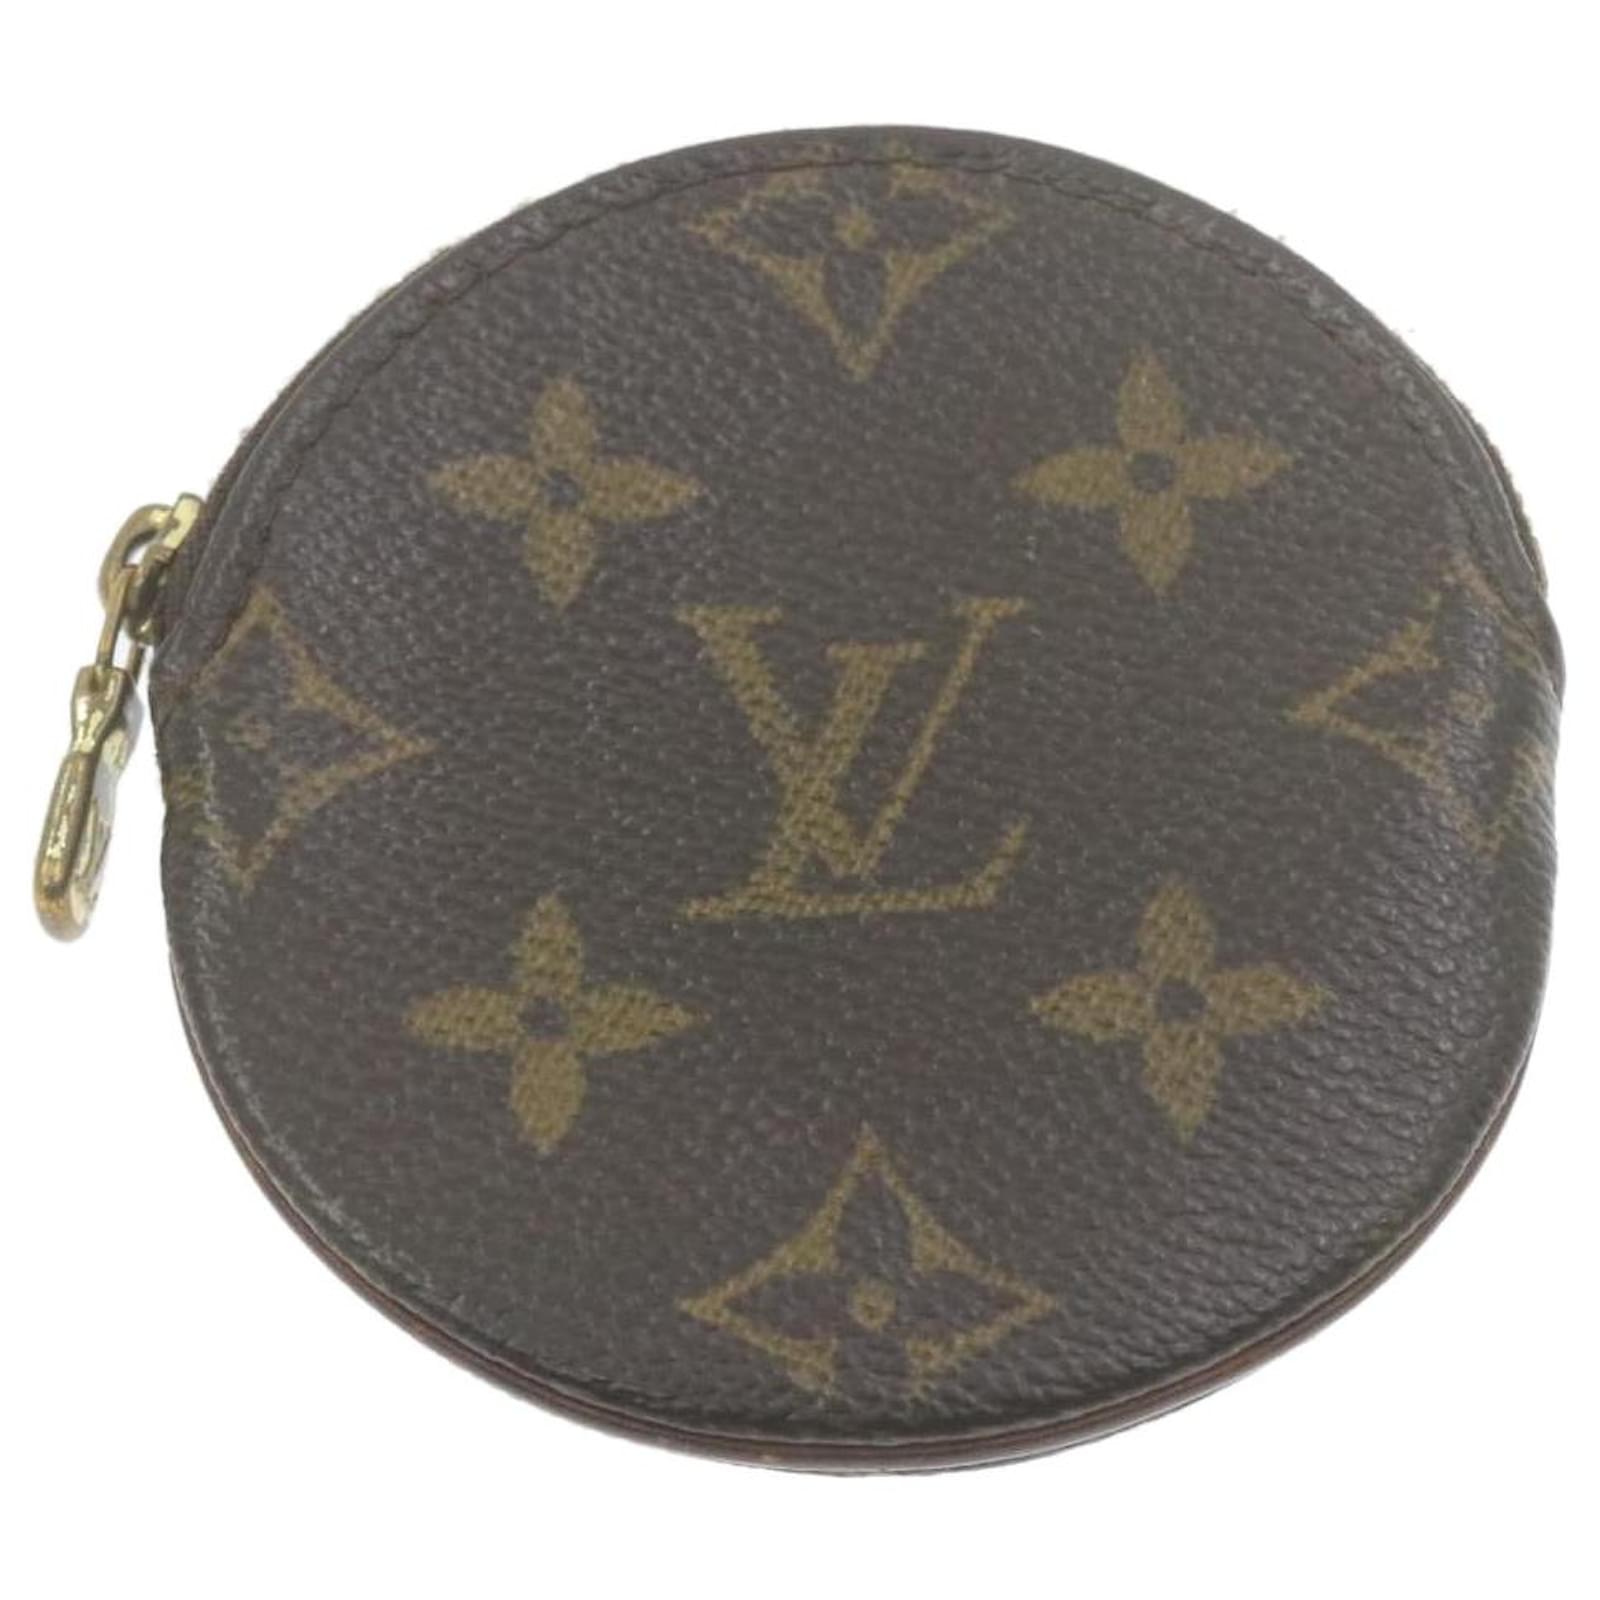 Louis Vuitton originale portagioie , comodissimo